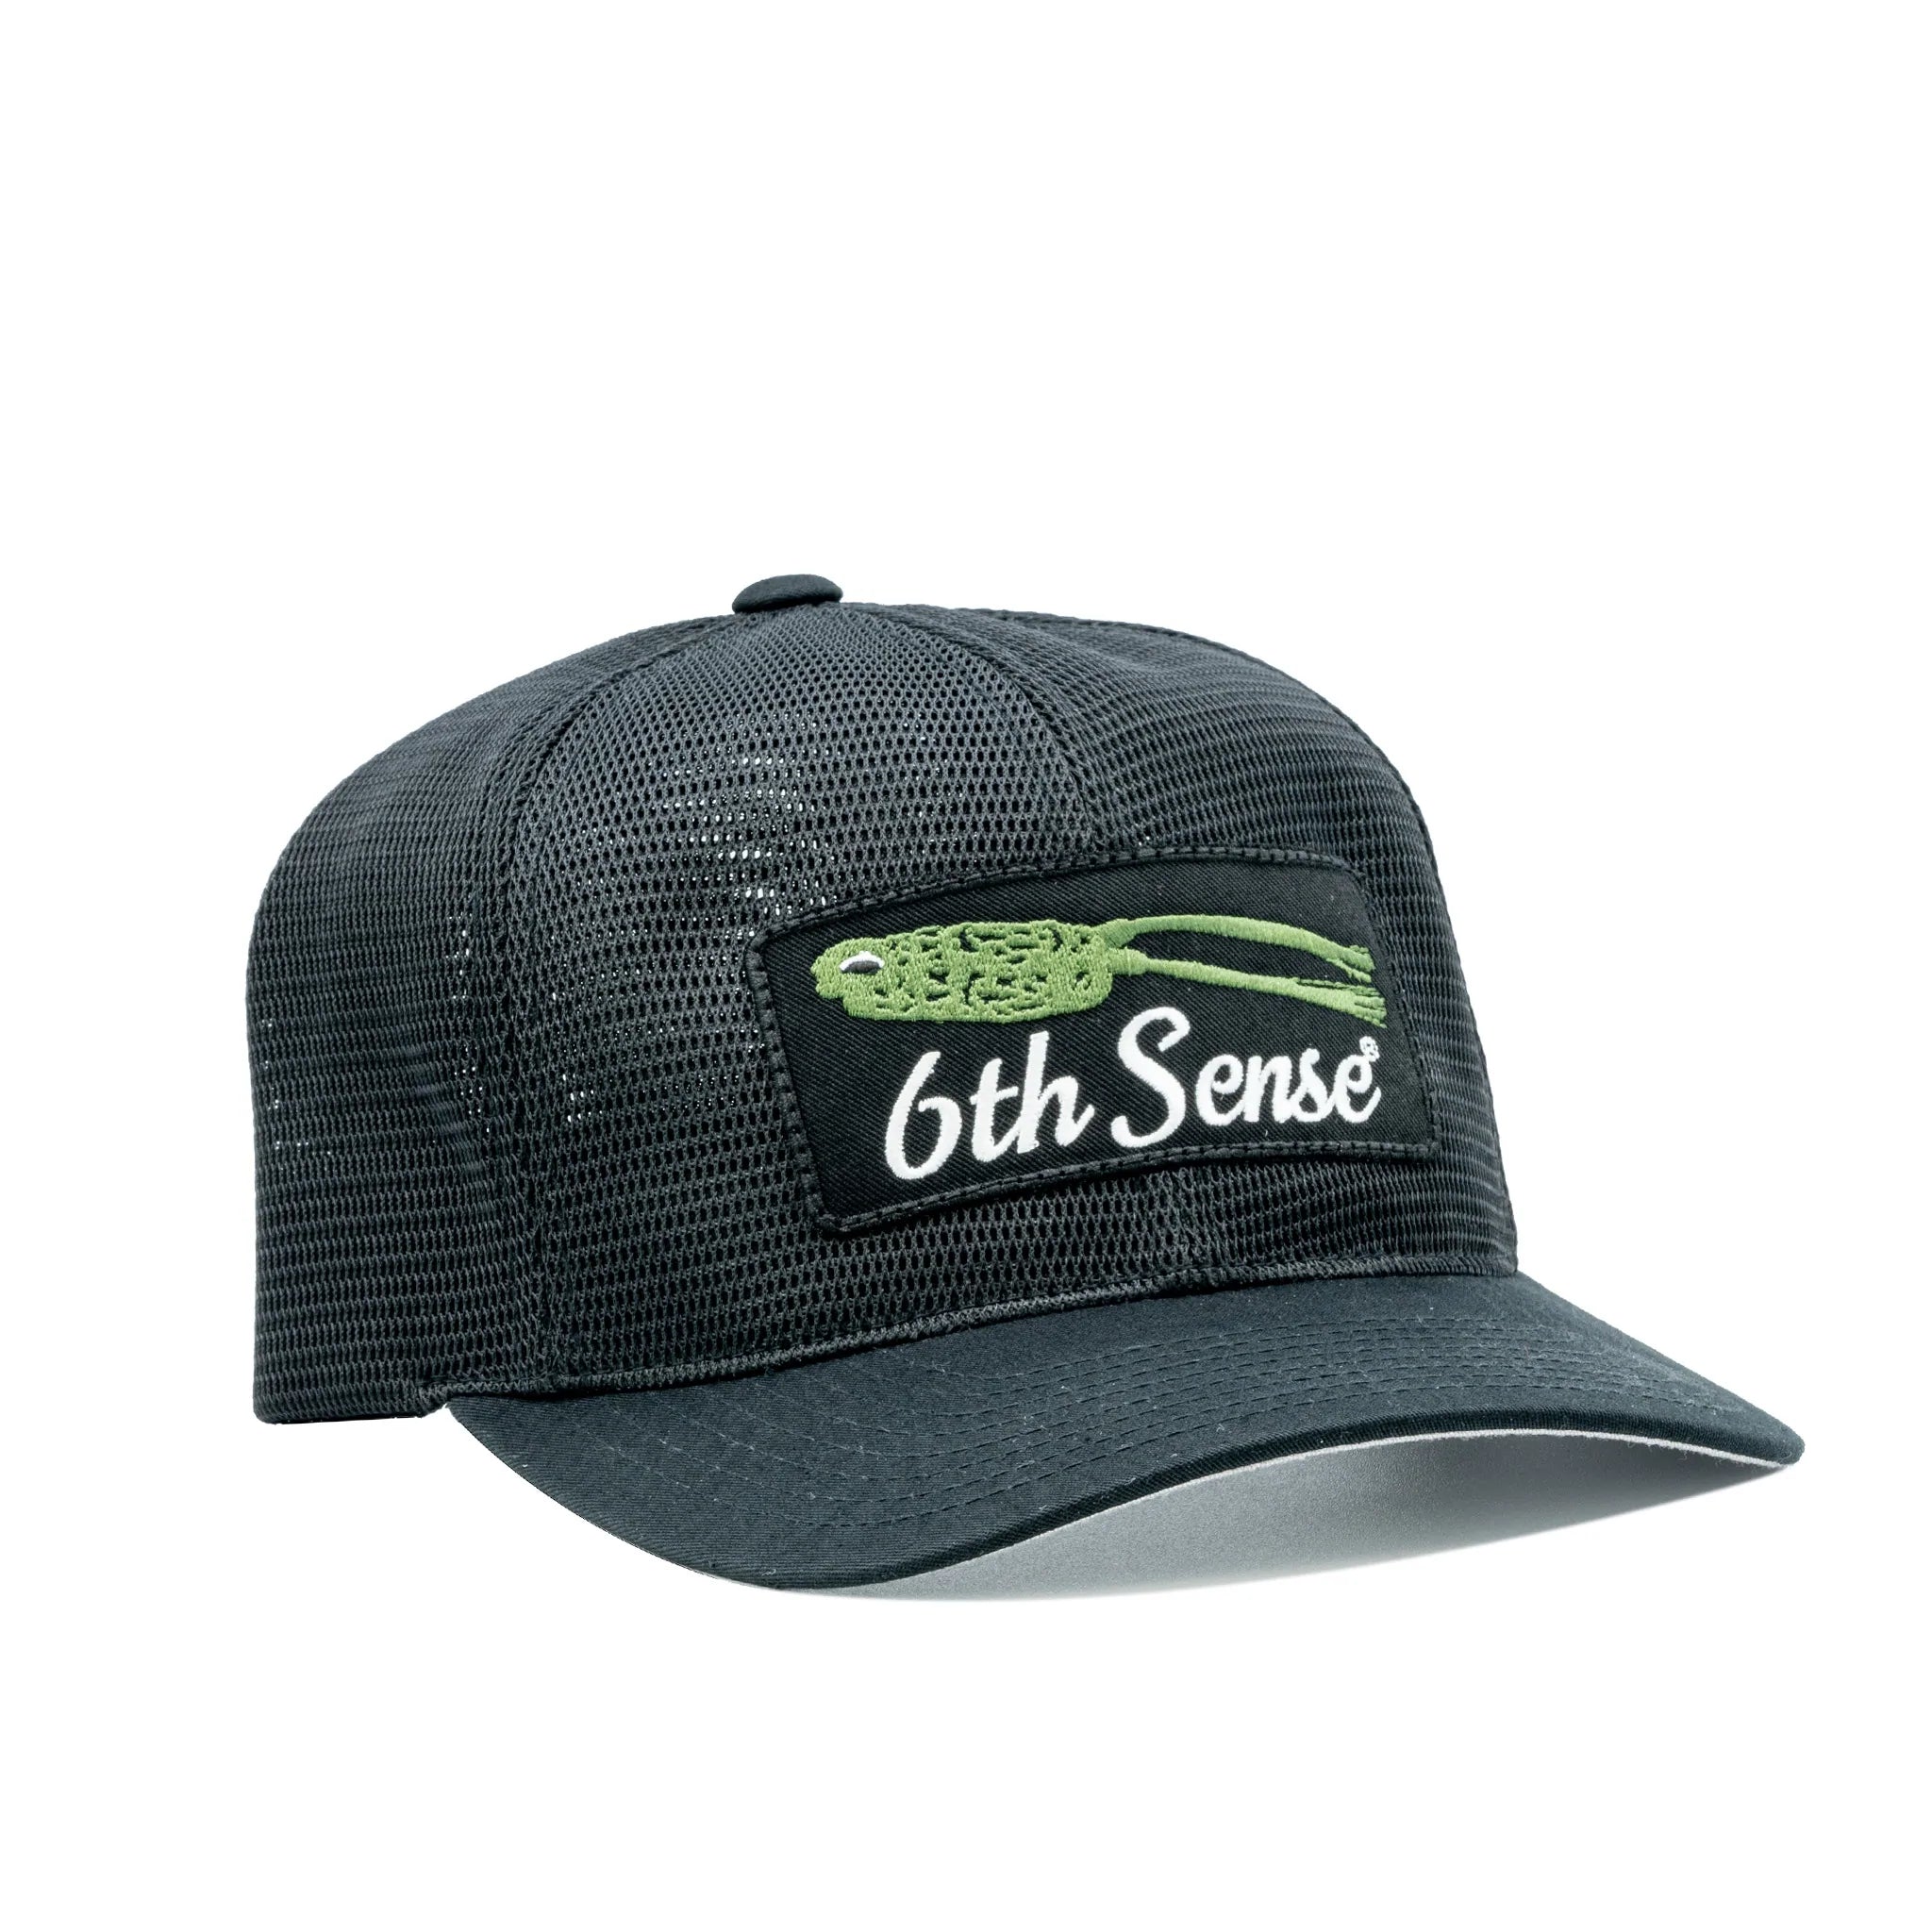 6th Sense Hats Old Timer - Fishbones Sage/Olive